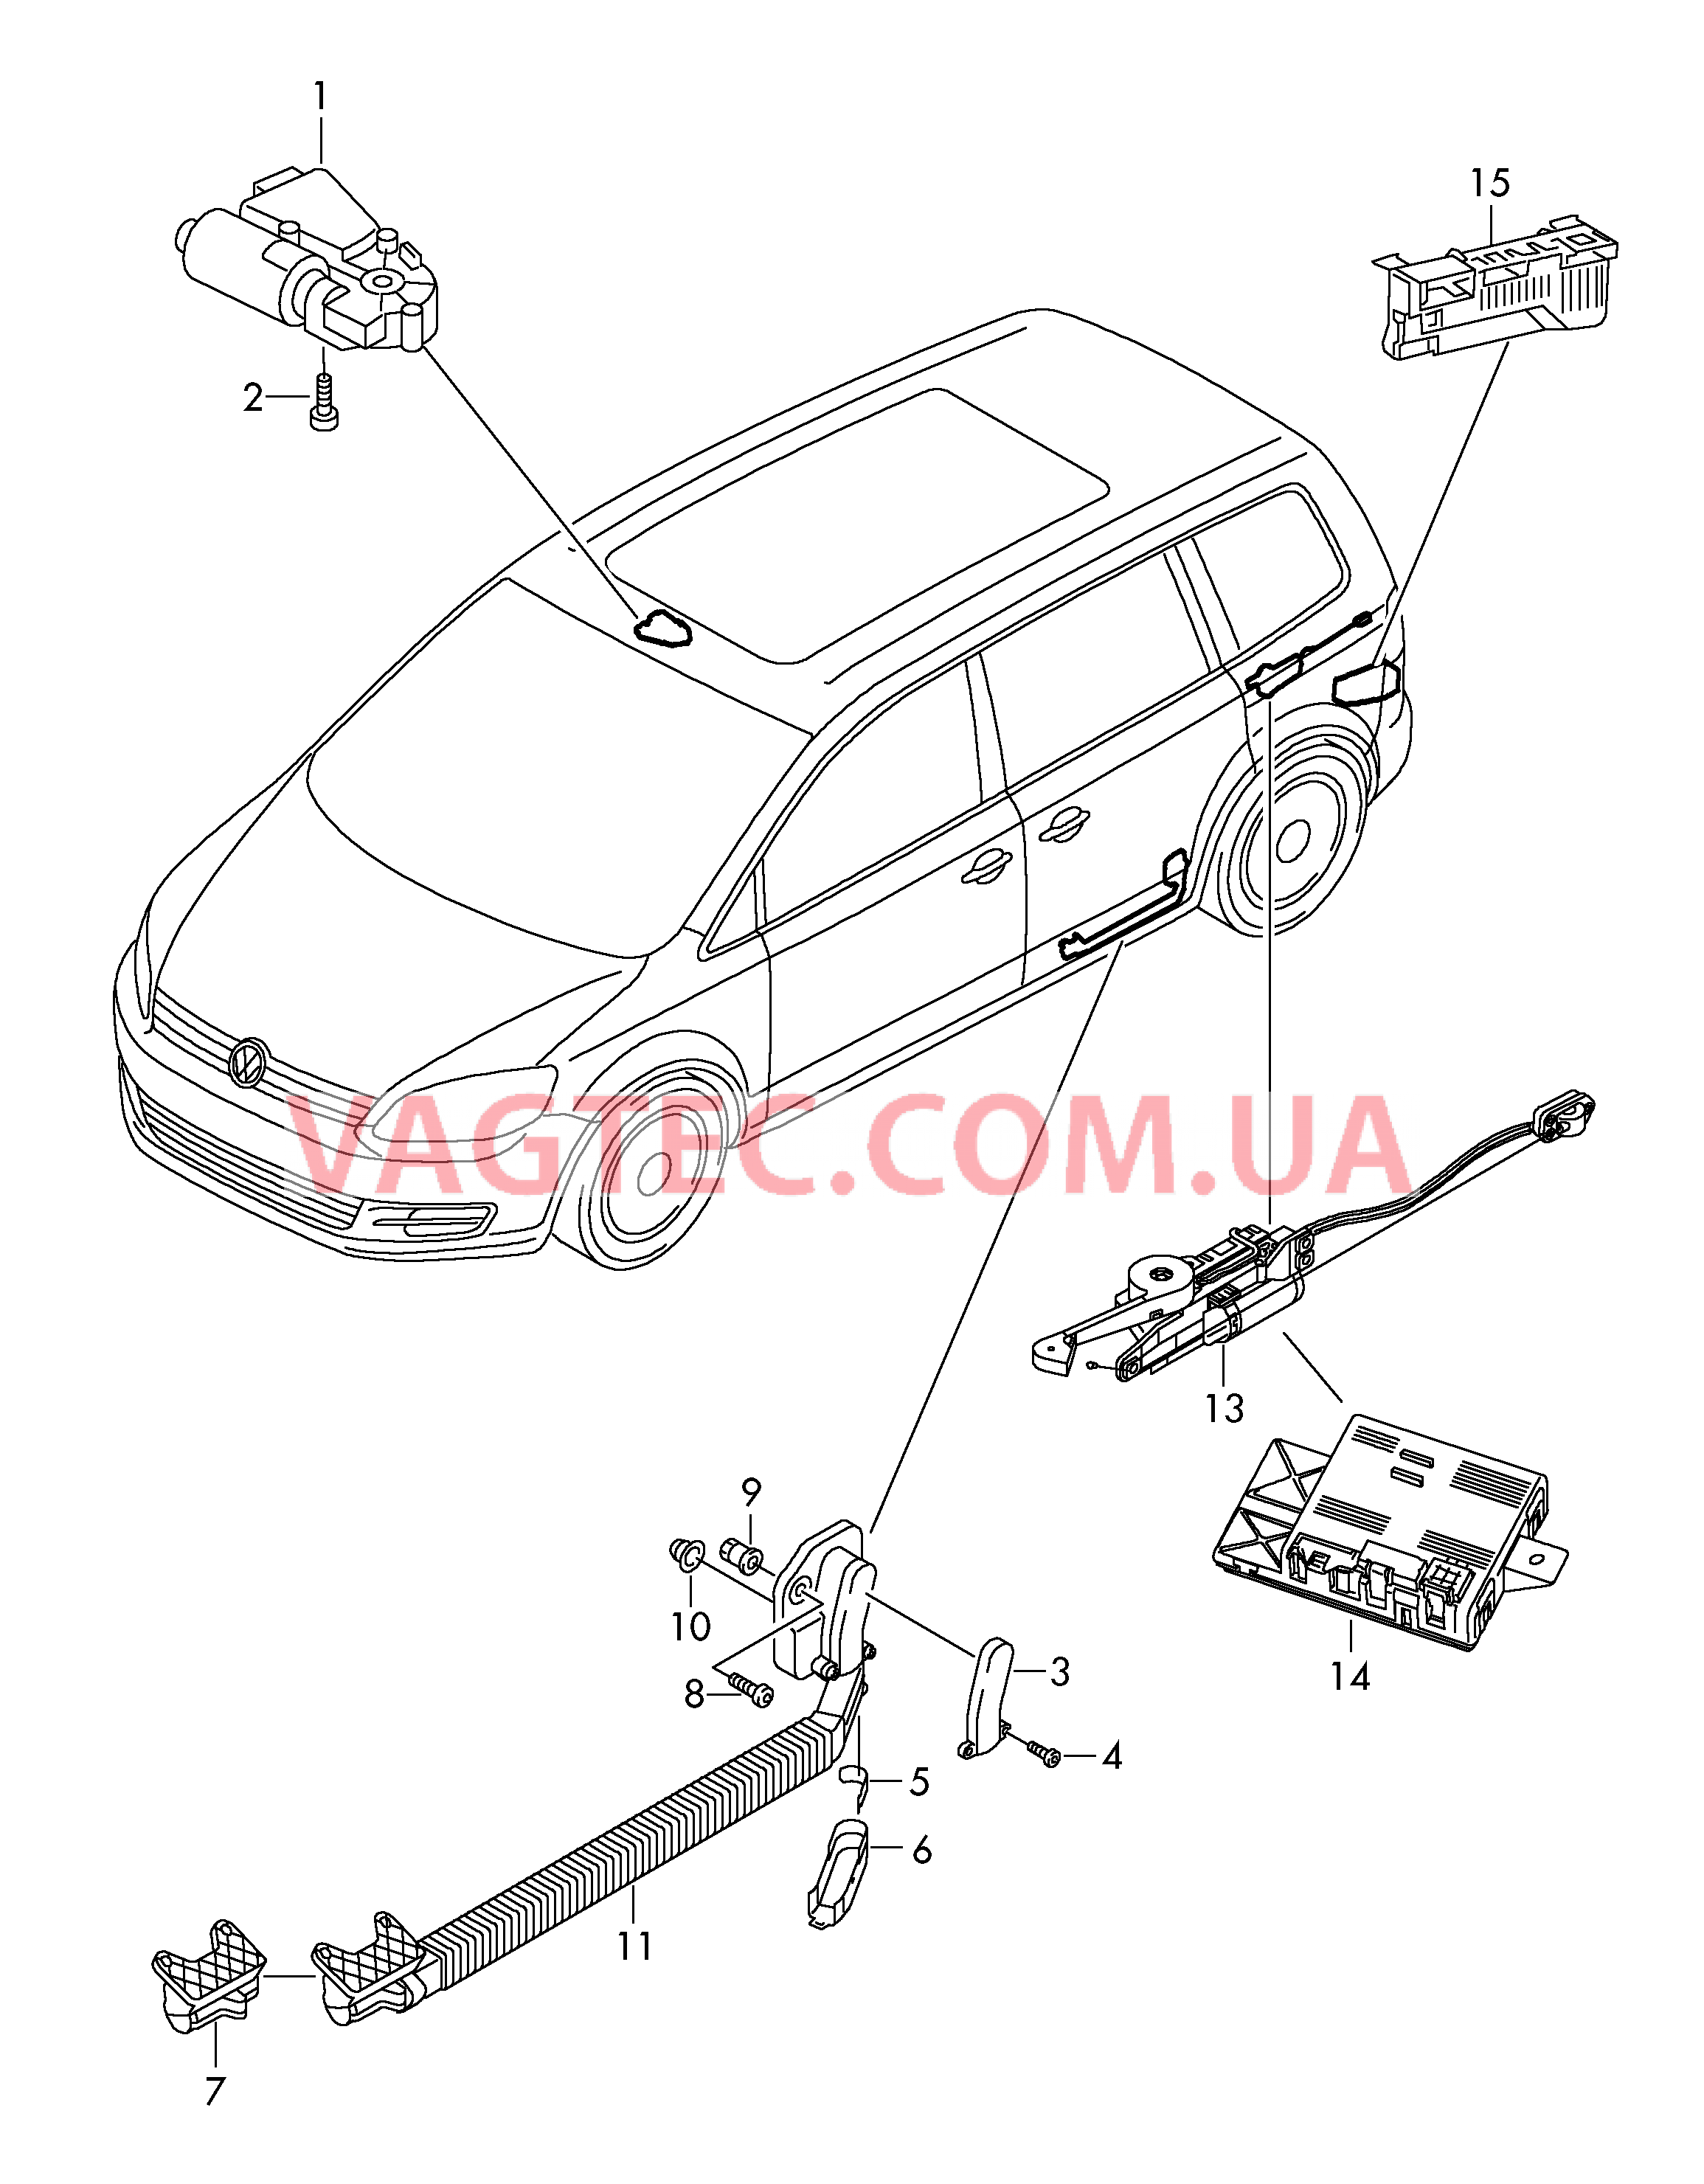 Мотор привода люка Электродетали для сдвижной двери  Блок управления доводчика  для SEAT Alhambra 2012